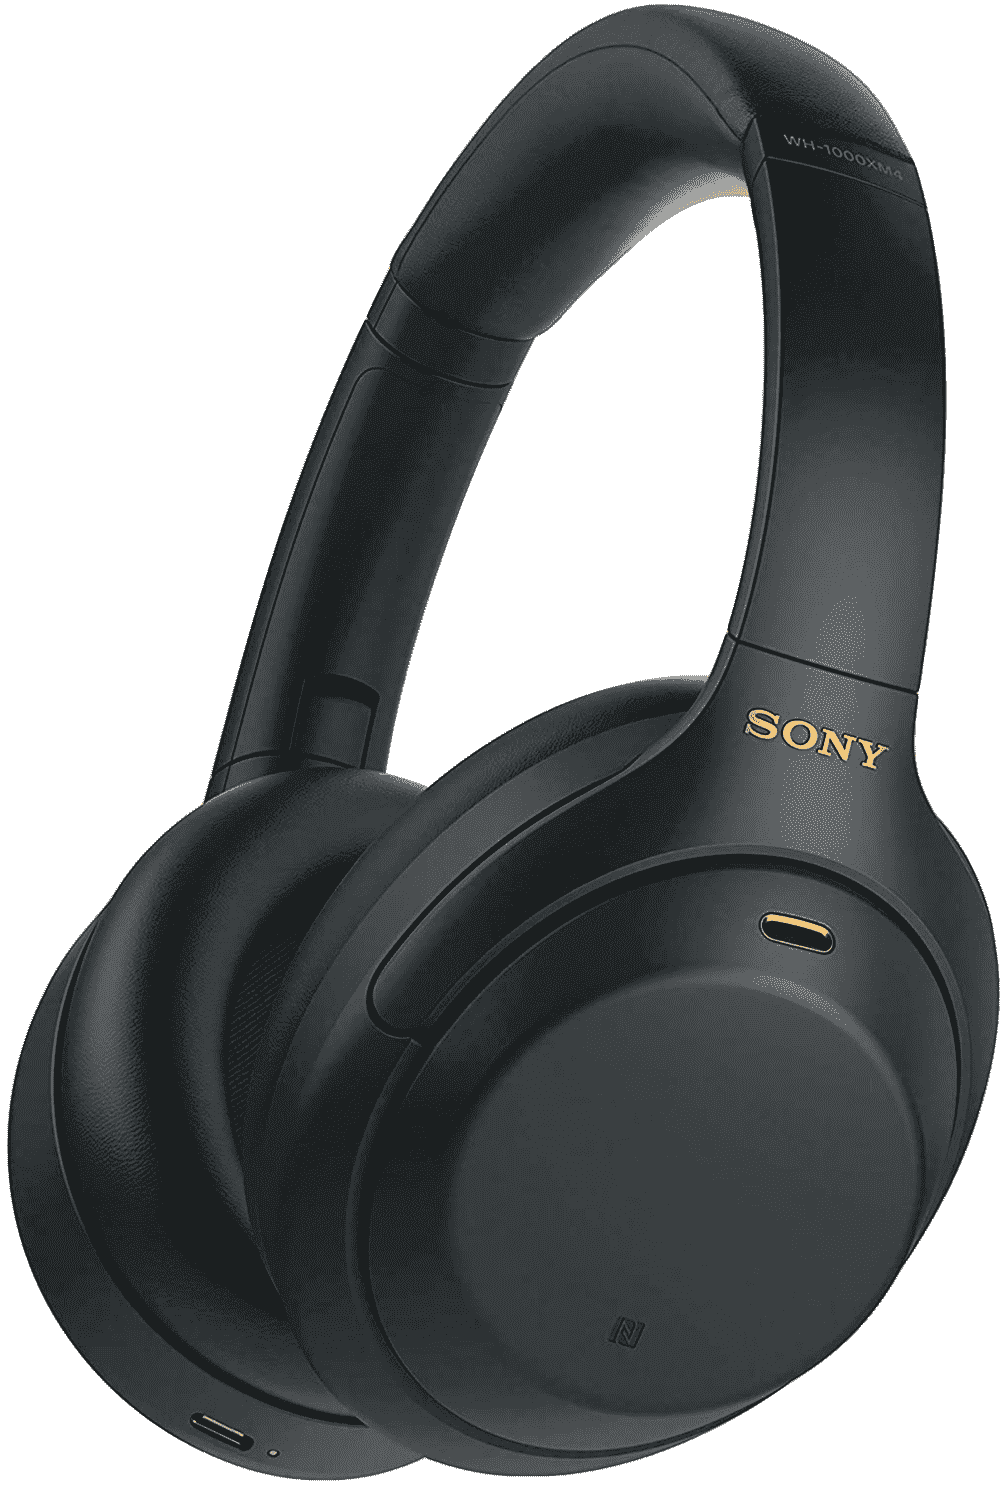 Sony Wh 1000xm4 recadrée